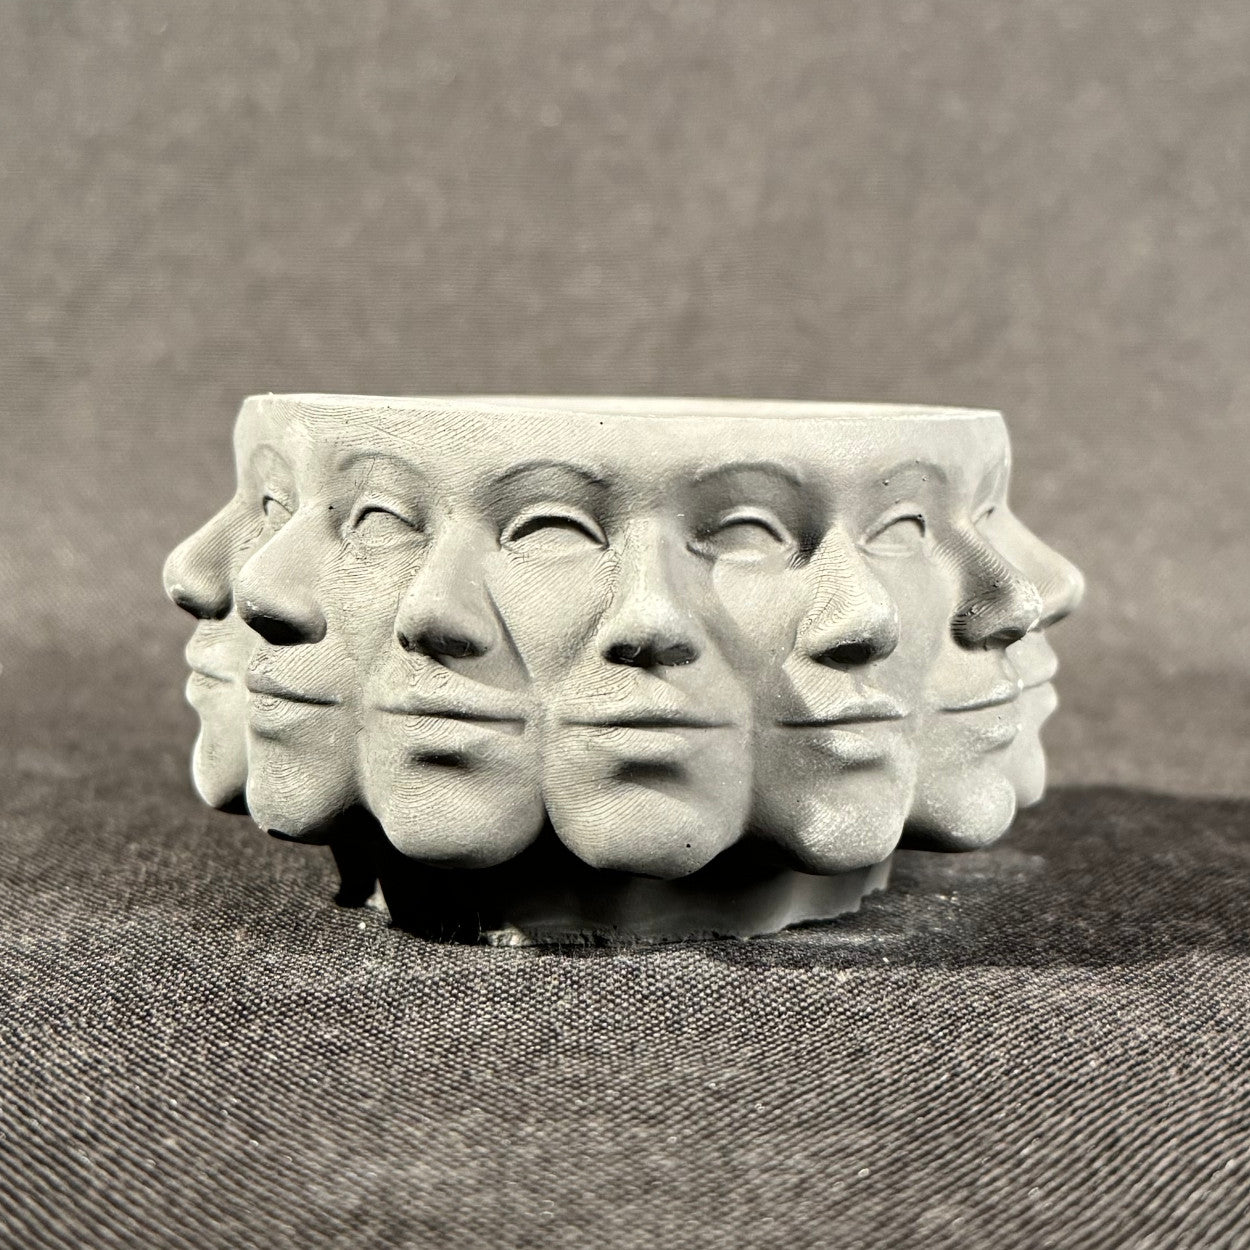 Beton-Vase "Gesichter"